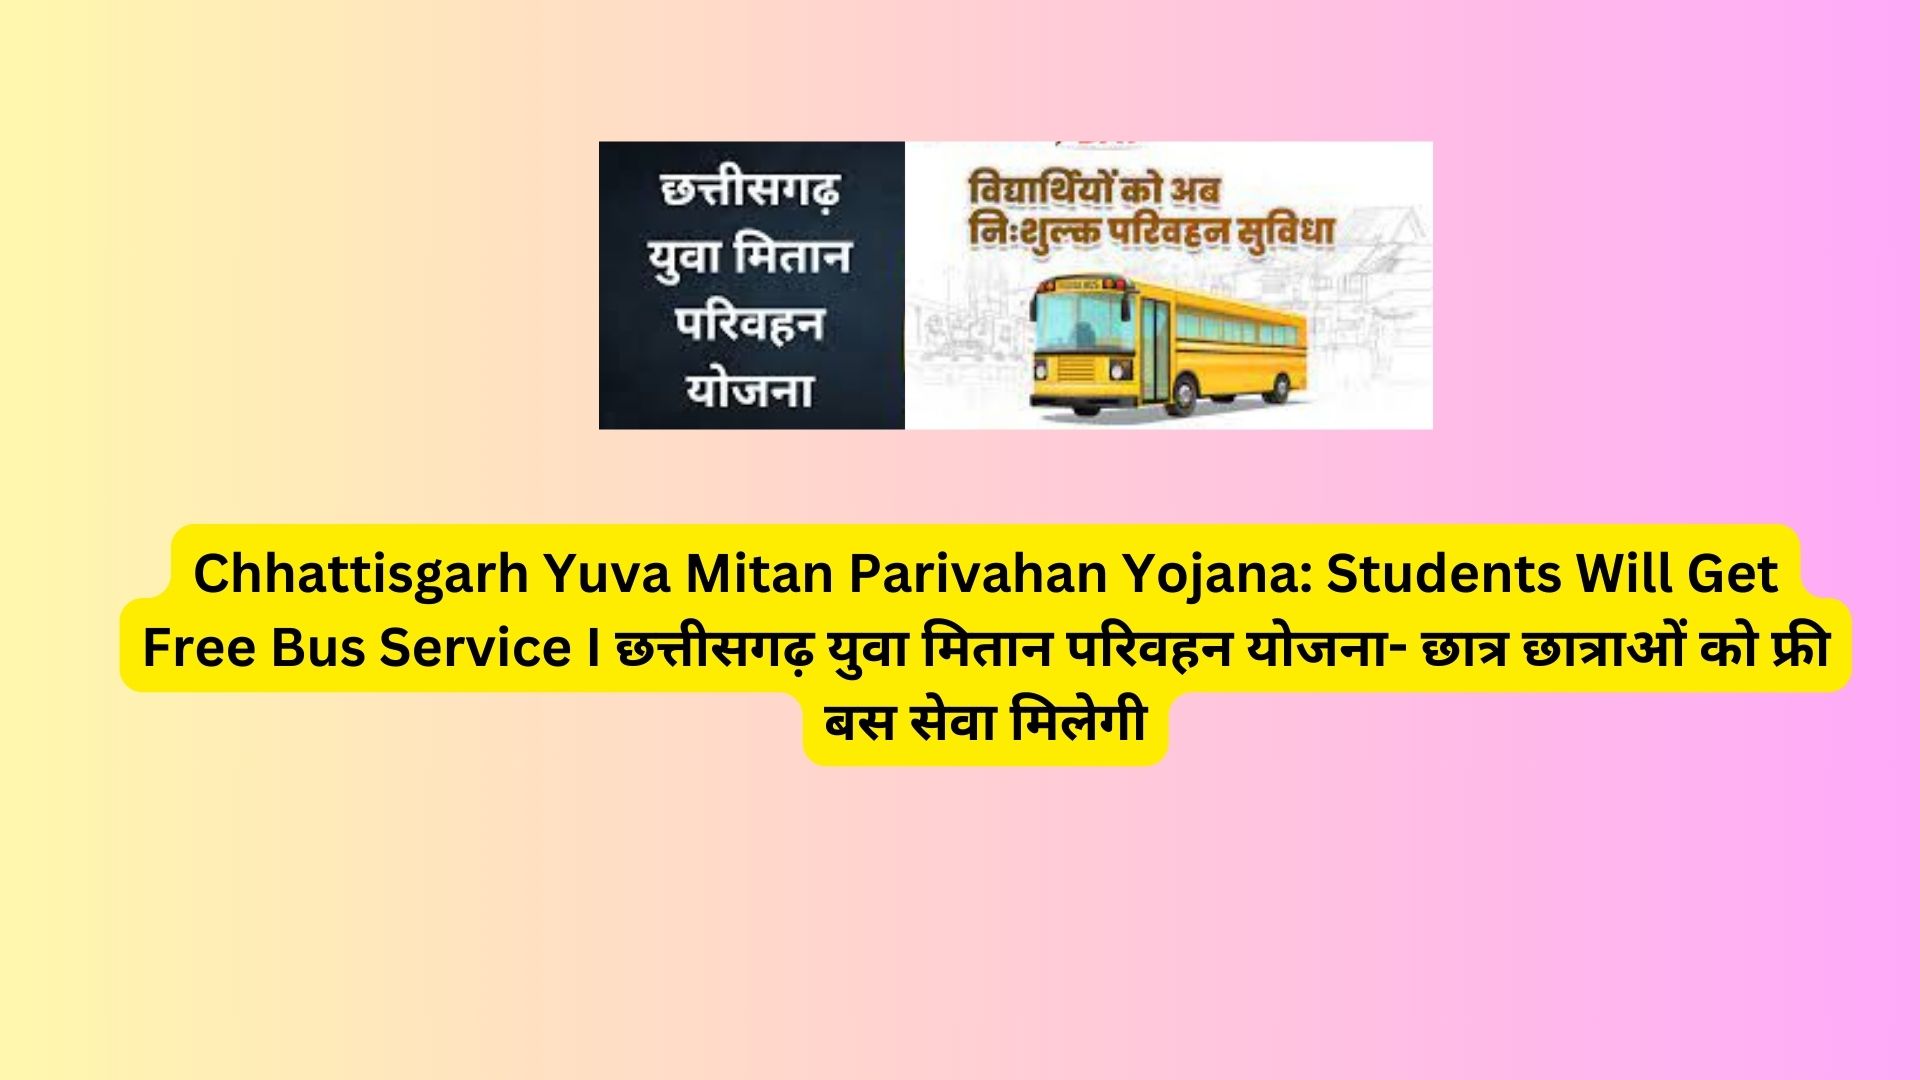 Chhattisgarh Yuva Mitan Parivahan Yojana: Students Will Get Free Bus Service I छत्तीसगढ़ युवा मितान परिवहन योजना- छात्र छात्राओं को फ्री बस सेवा मिलेगी